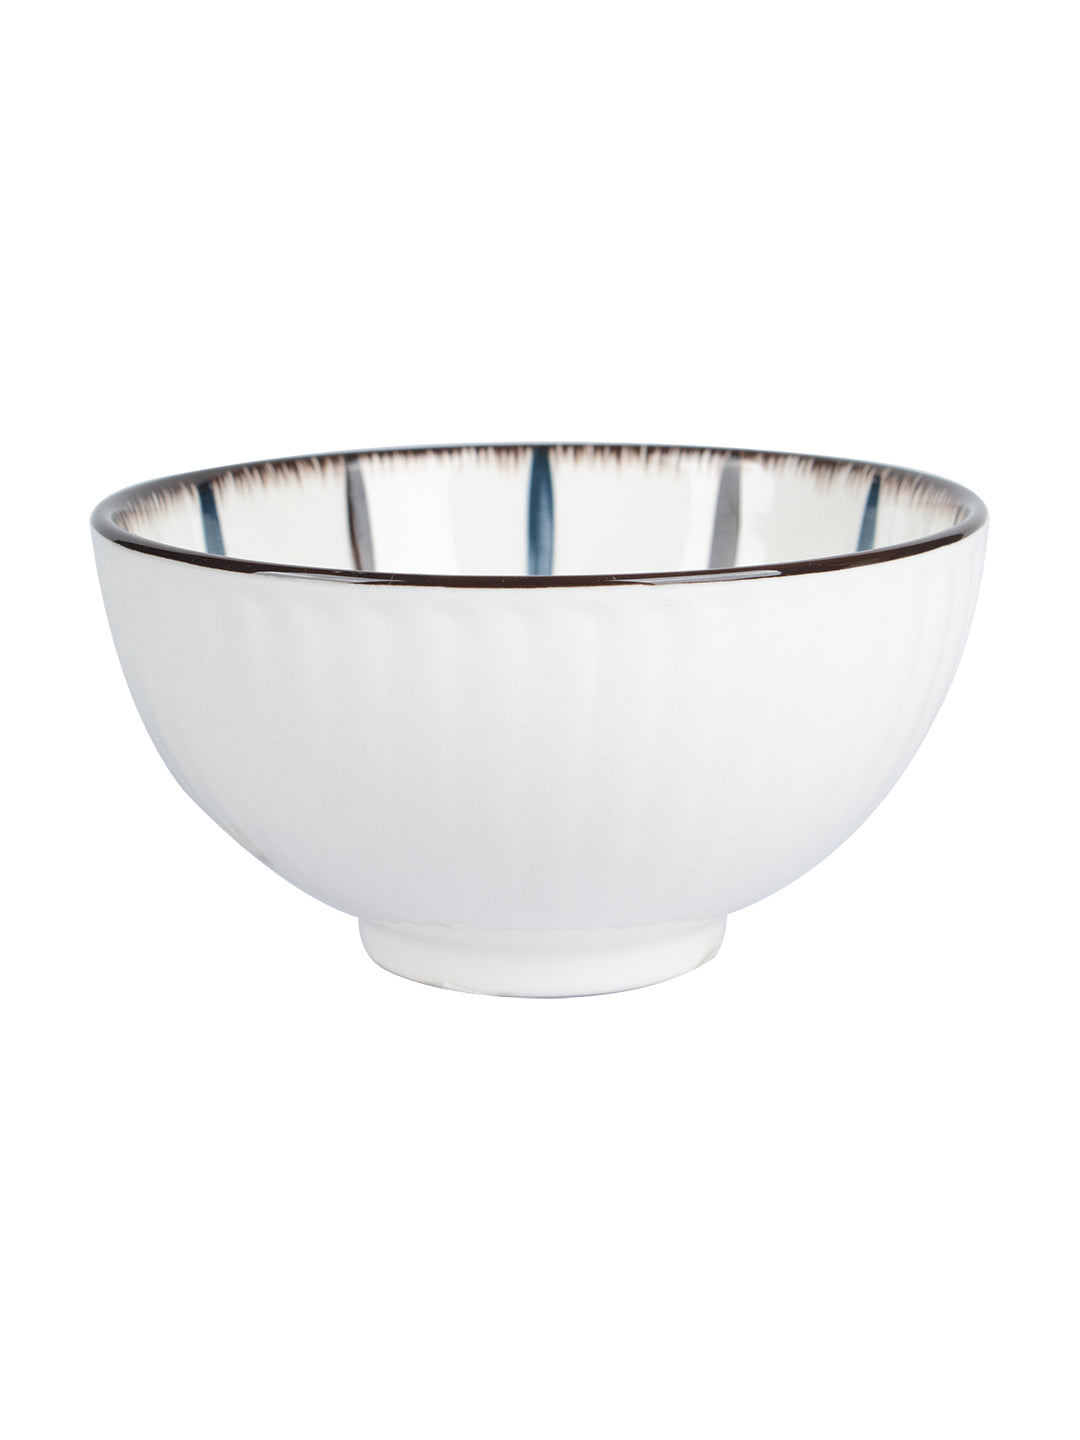 VON CASA Round Tableware Ceramic Serving Bowl - Off White